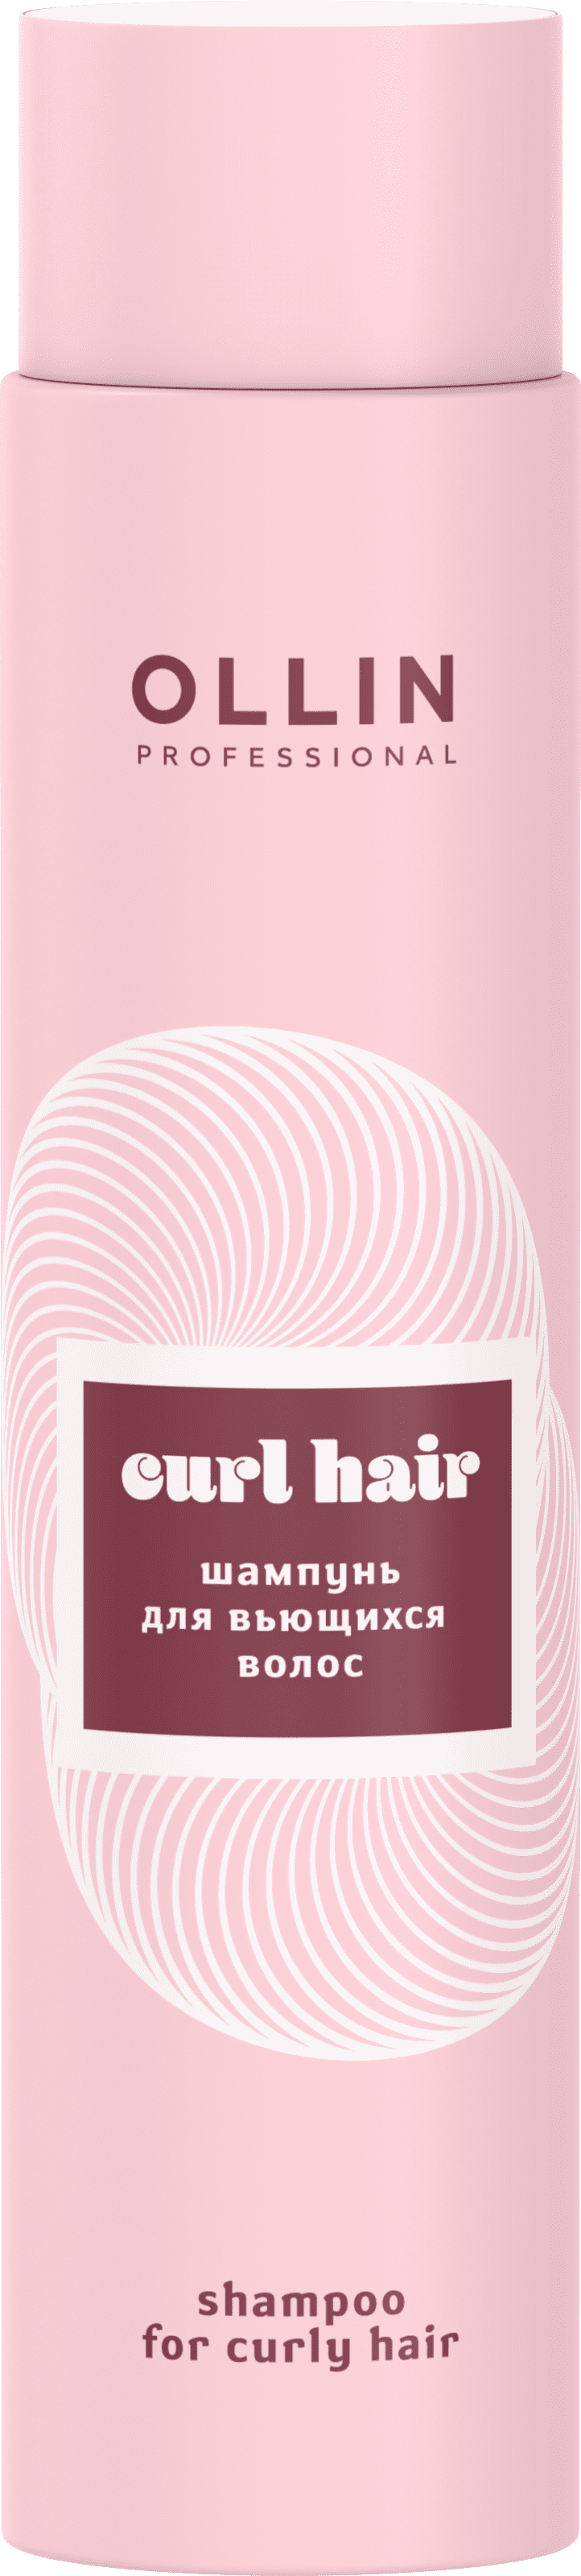 Шампунь для вьющихся волос / CURL HAIR 300 мл